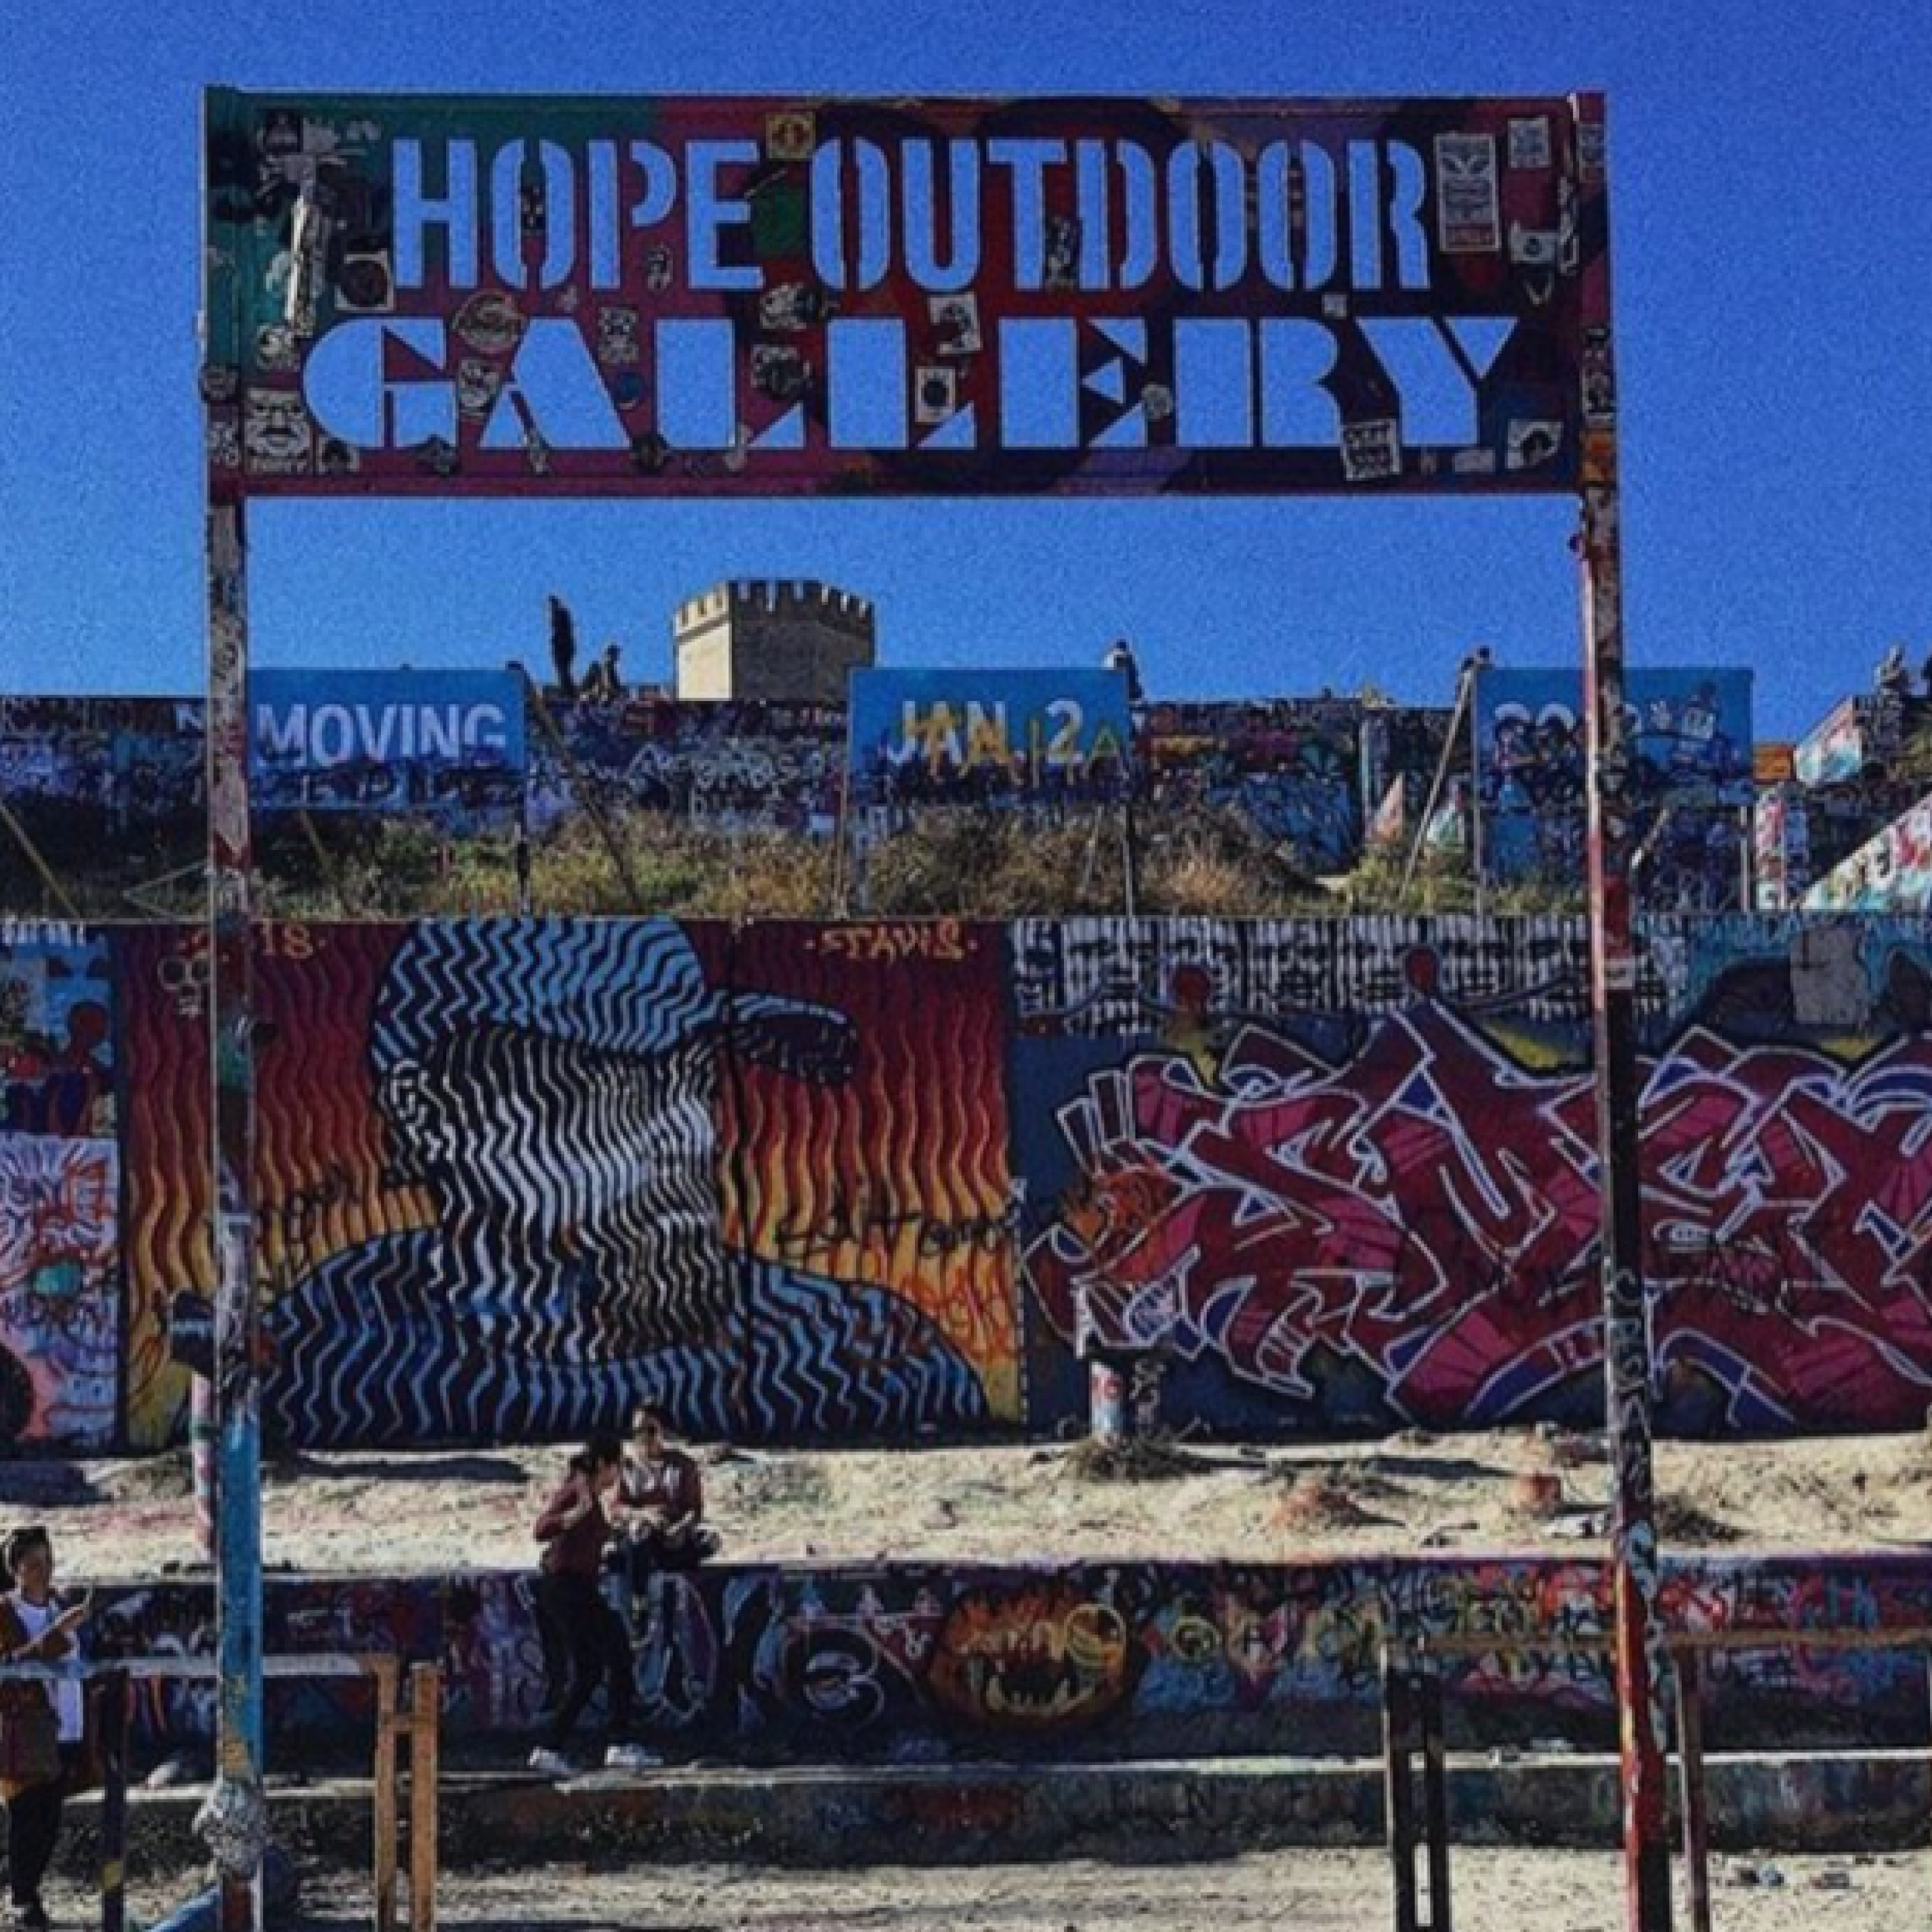 HOPE outdoor gallery가 처음 생겼던 위치에 전시된 아트 월